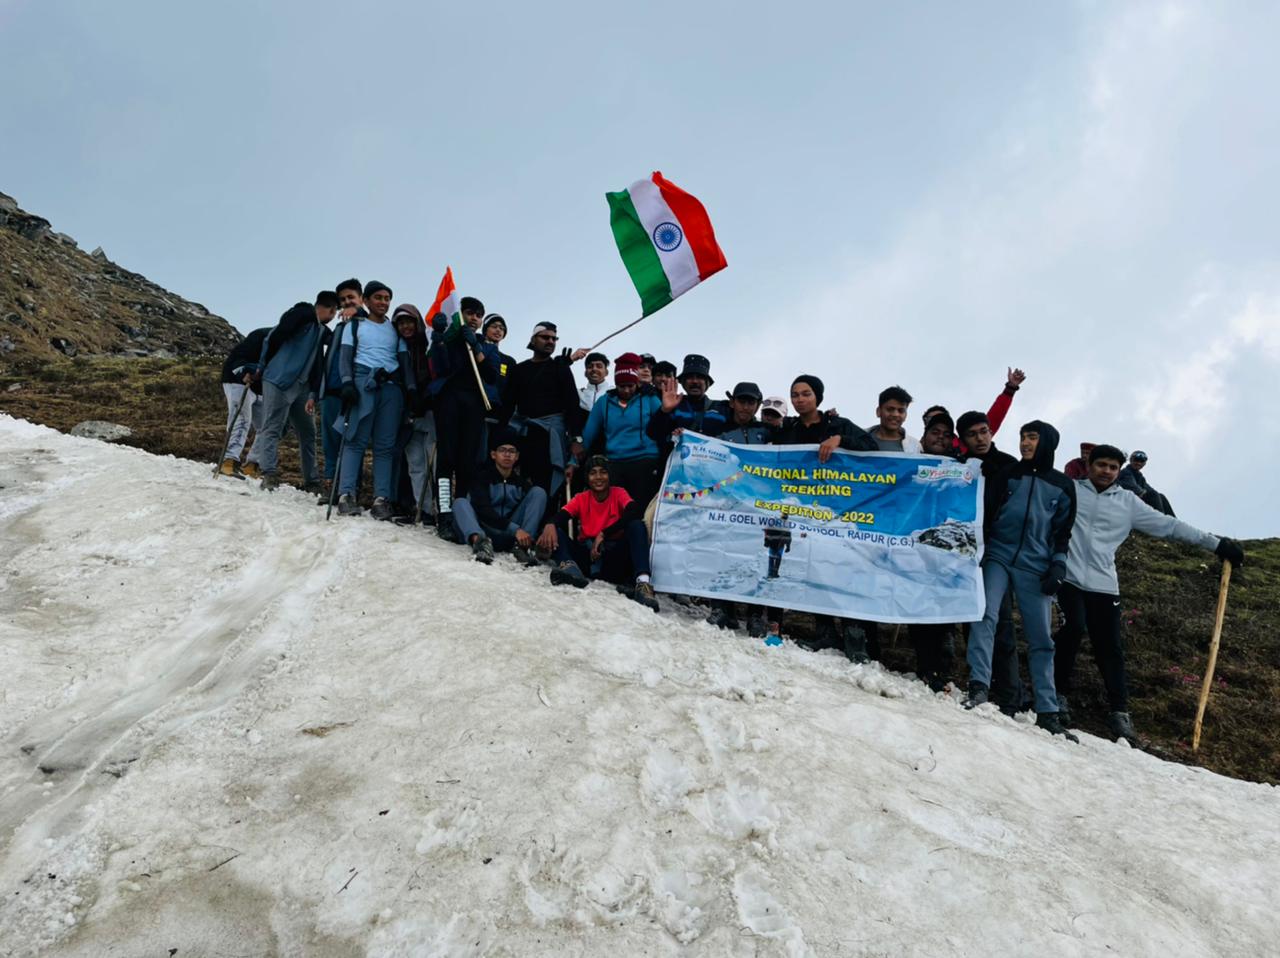 ‘NH Goel वर्ल्ड स्कूल’ के बच्चों ने रचा कीर्तिमान, सबसे ऊंची चोटी पर लहराया तिरंगा